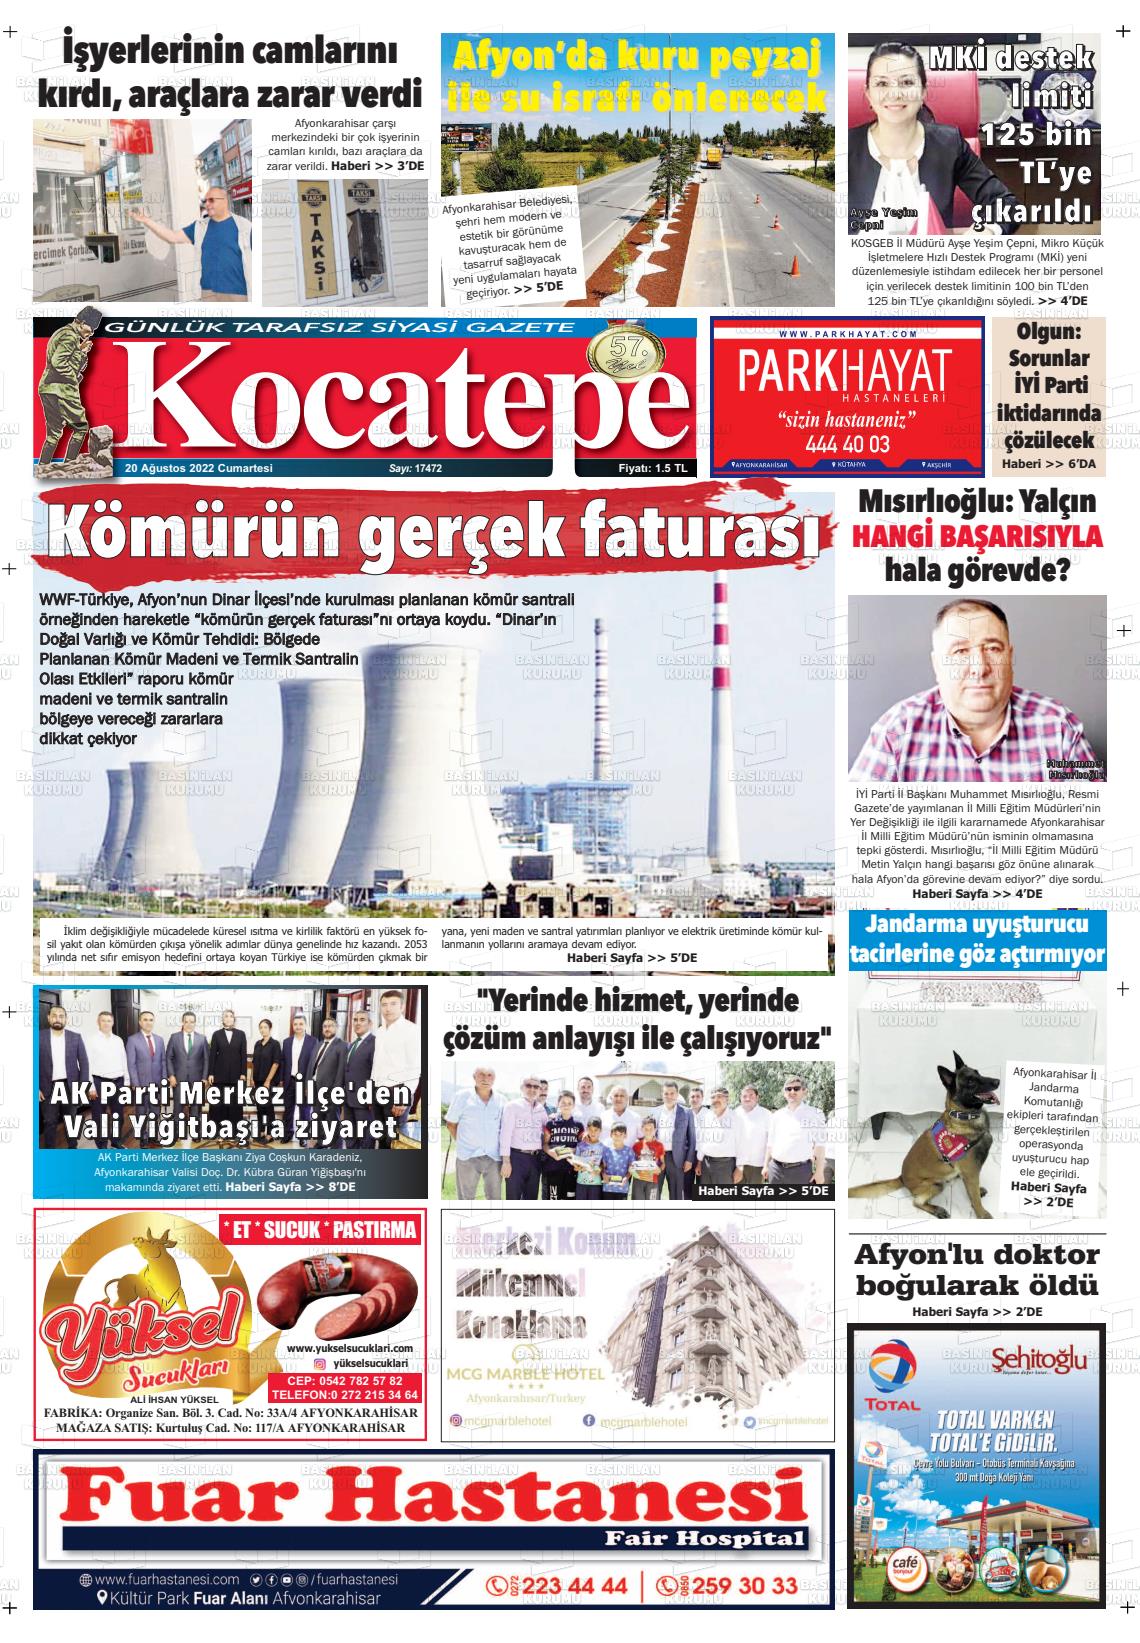 20 Ağustos 2022 Kocatepe Gazete Manşeti